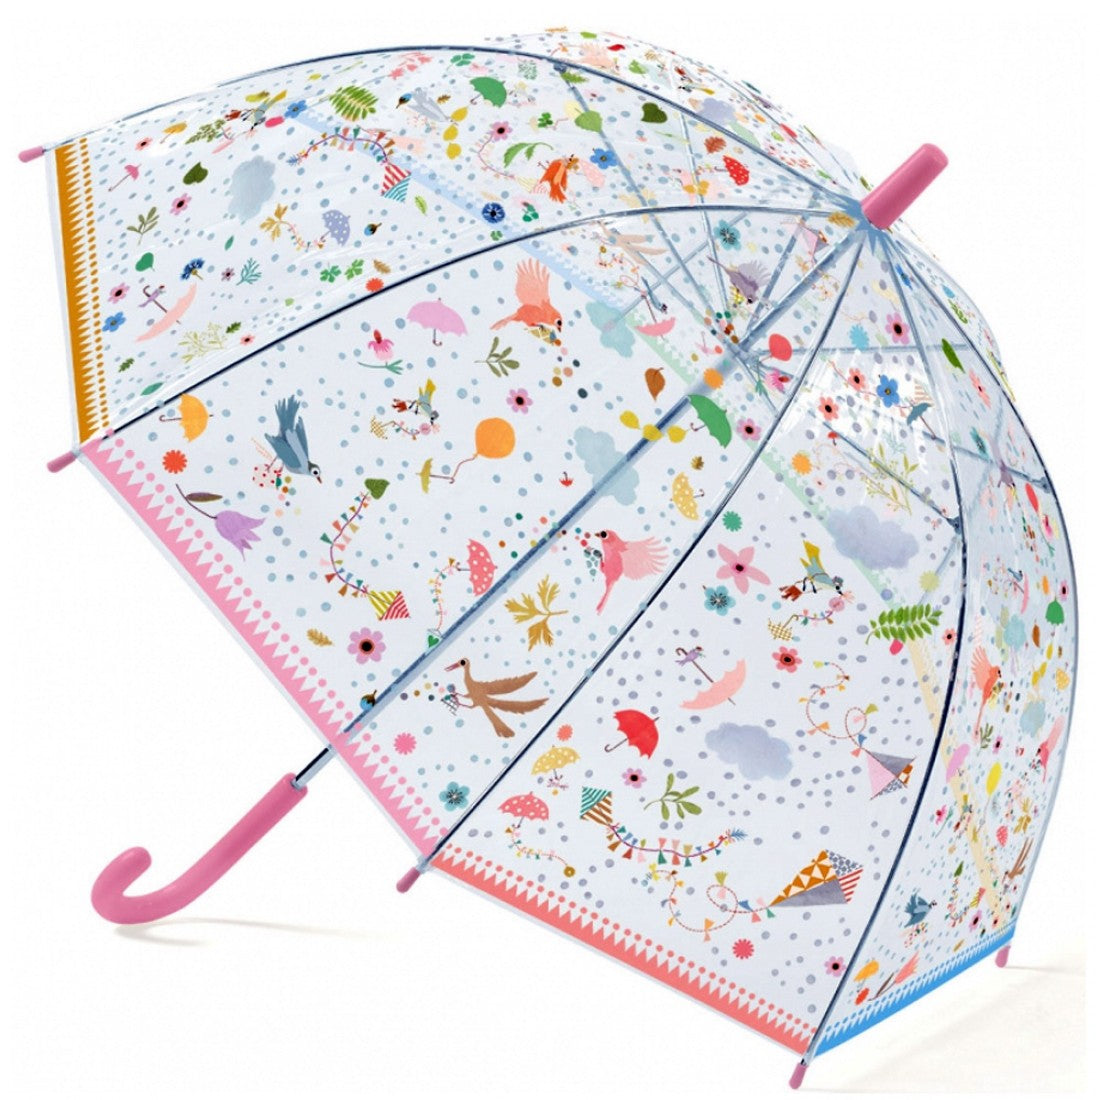 Djeco Lighness Umbrella